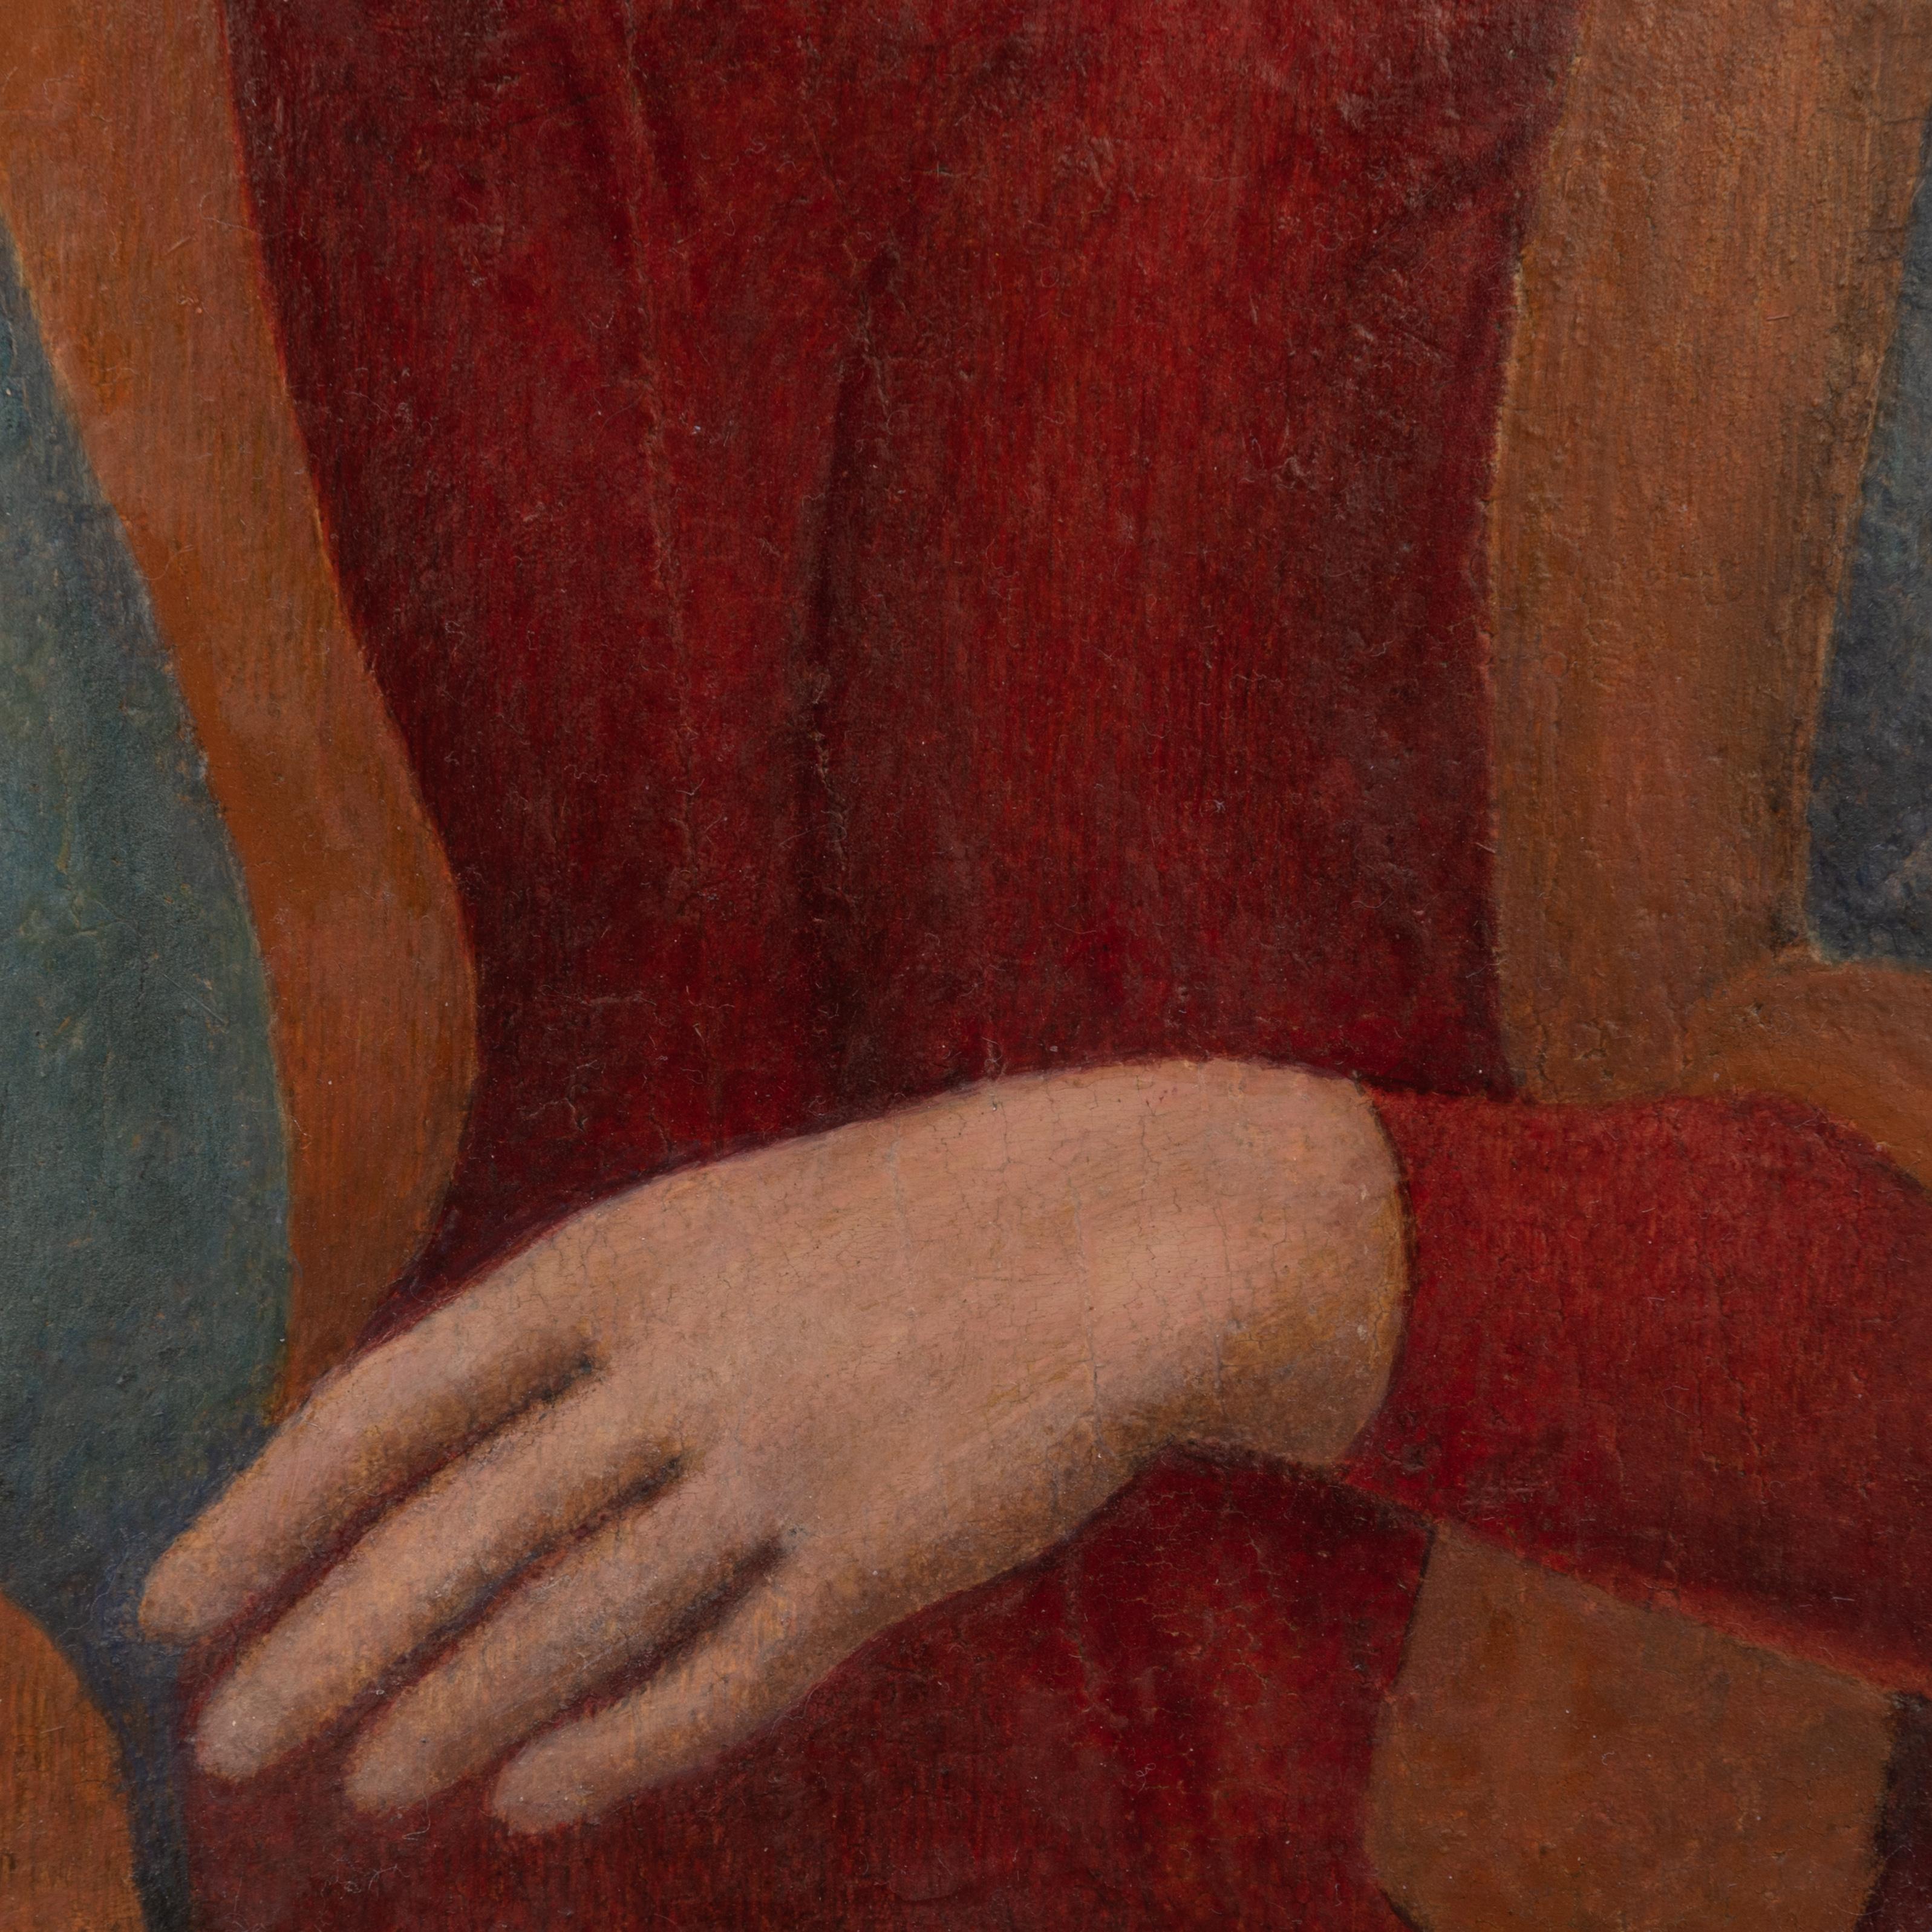 Merveilleux tableau de maître italien ancien Madone 
Huile sur panneau
Alessandro Filipepi, également connu sous le nom de Sandro Botticelli, est le premier artiste qui vient à l'esprit à la vue de cette charmante peinture à l'huile polychrome.
Un